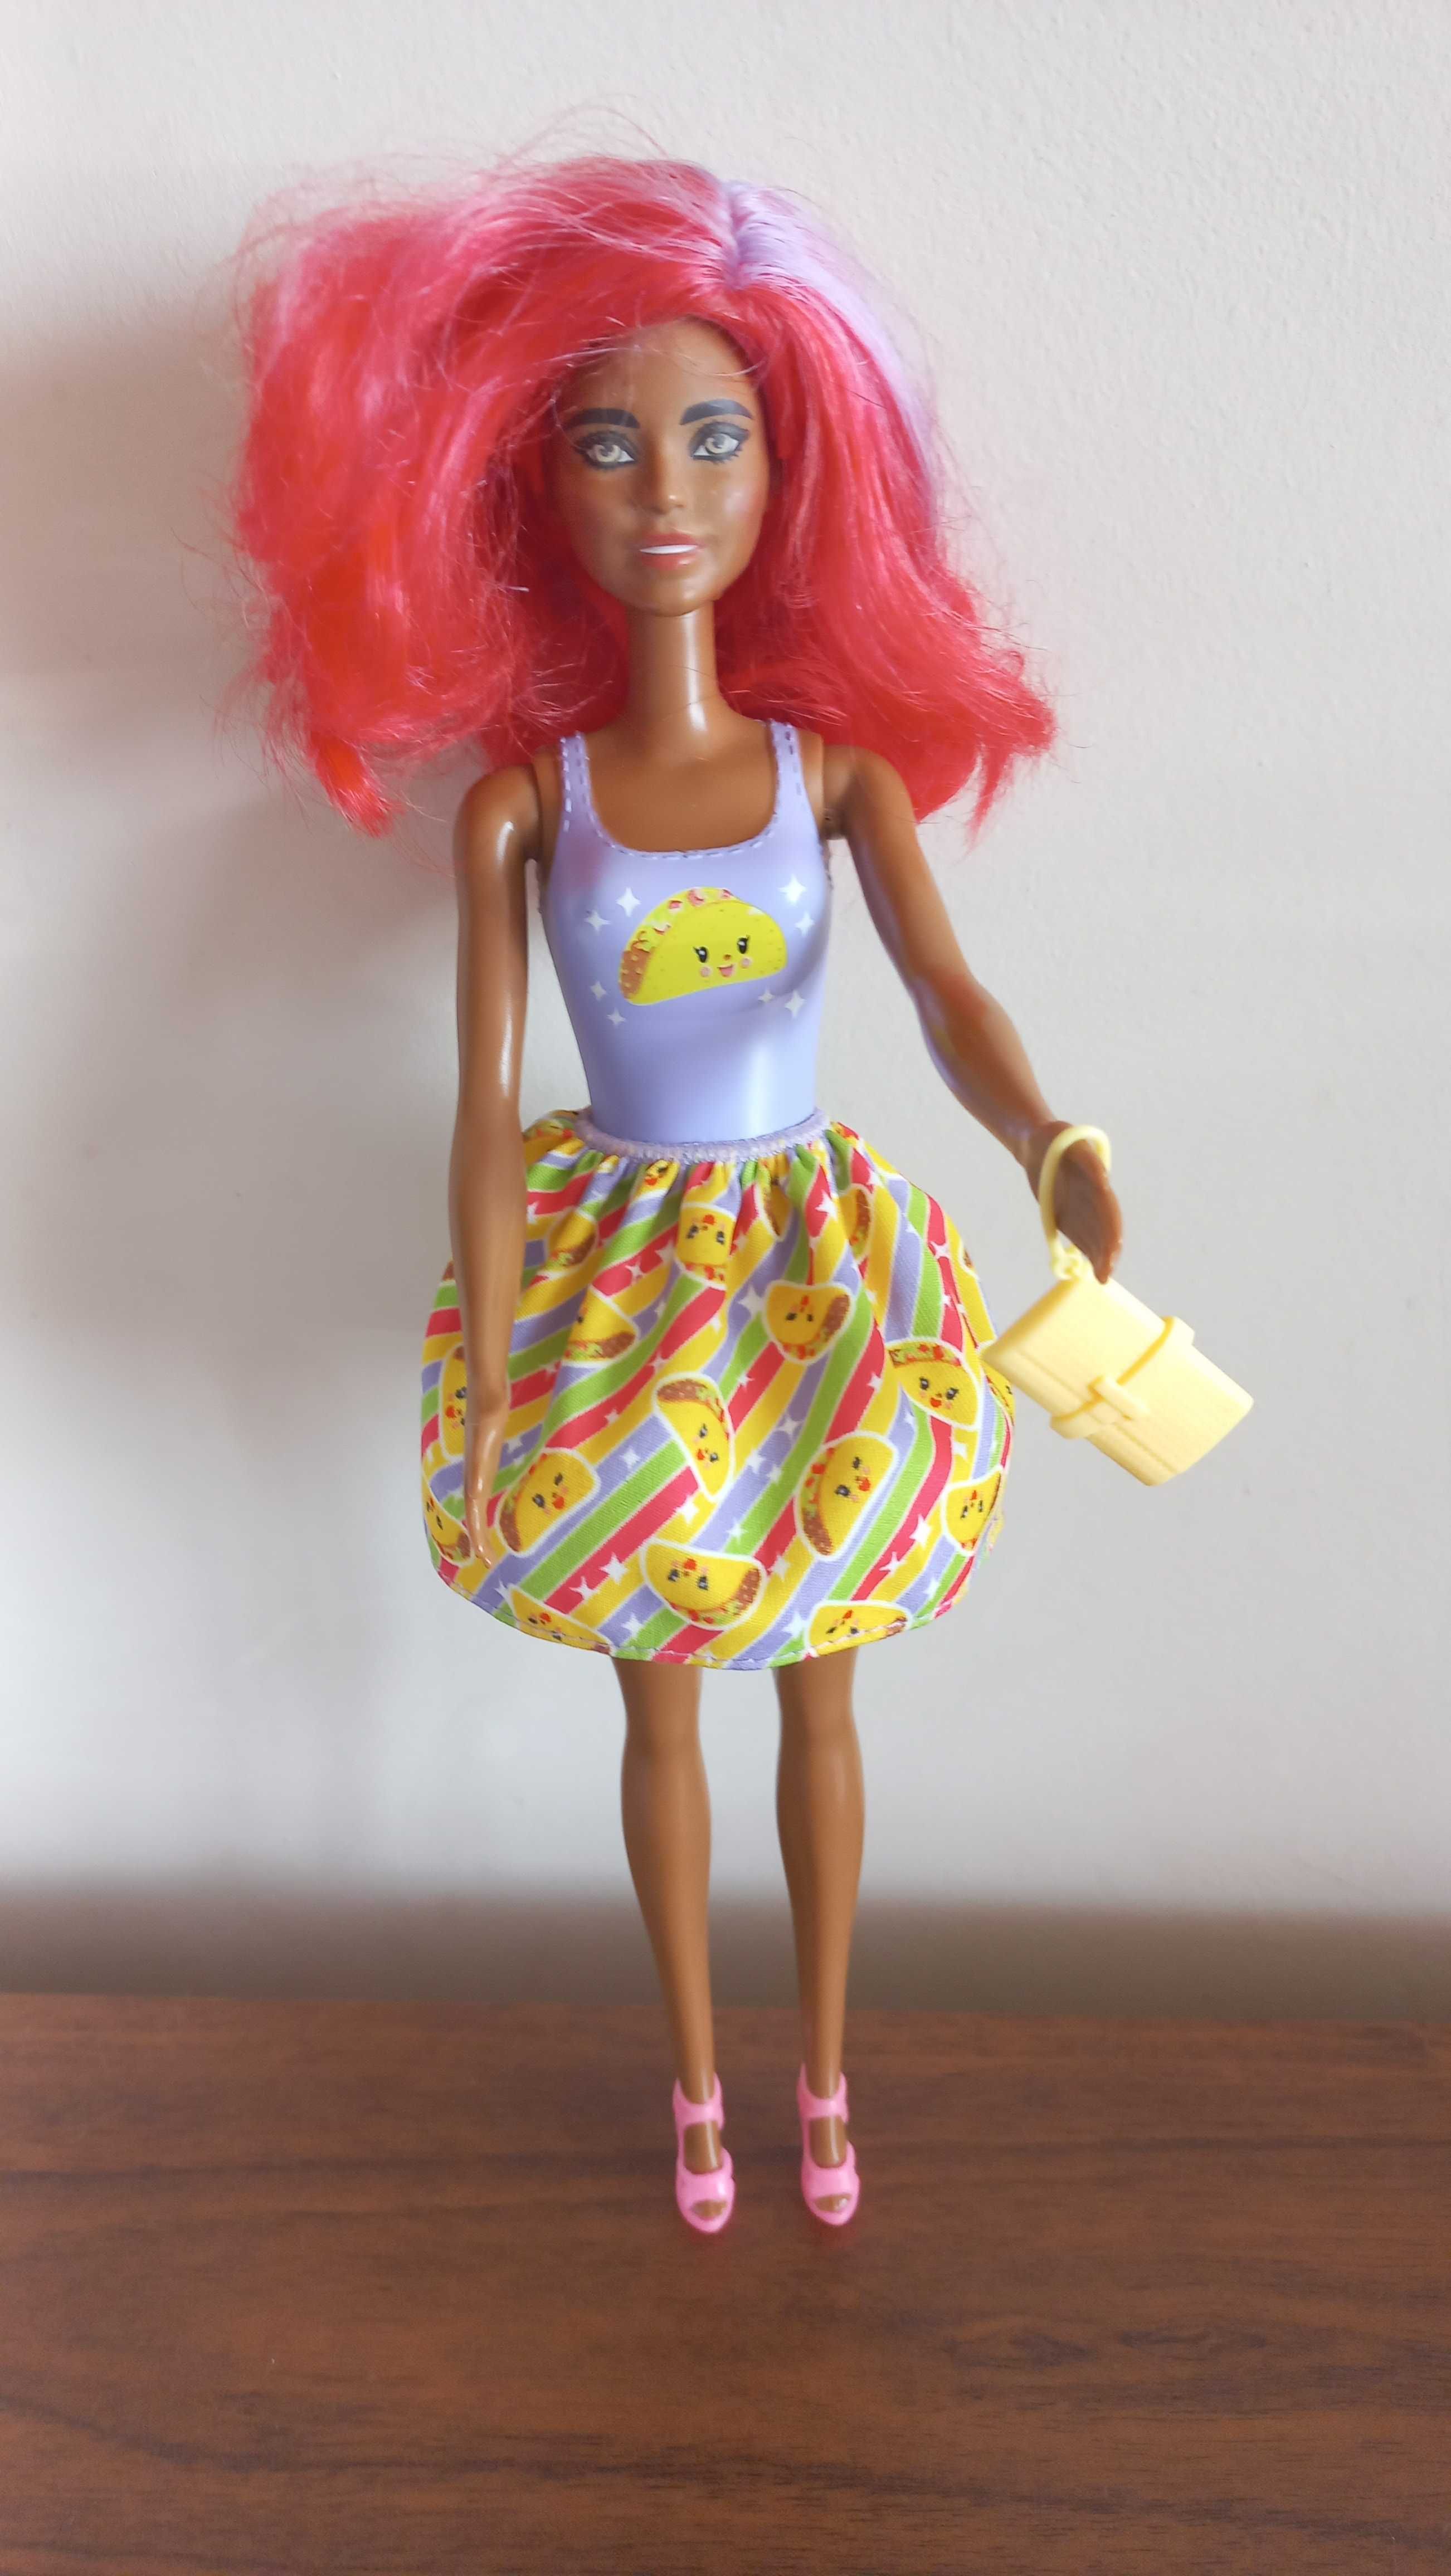 Lalka Barbie peruka 2 in 1 zestaw akcesoriow super gratis